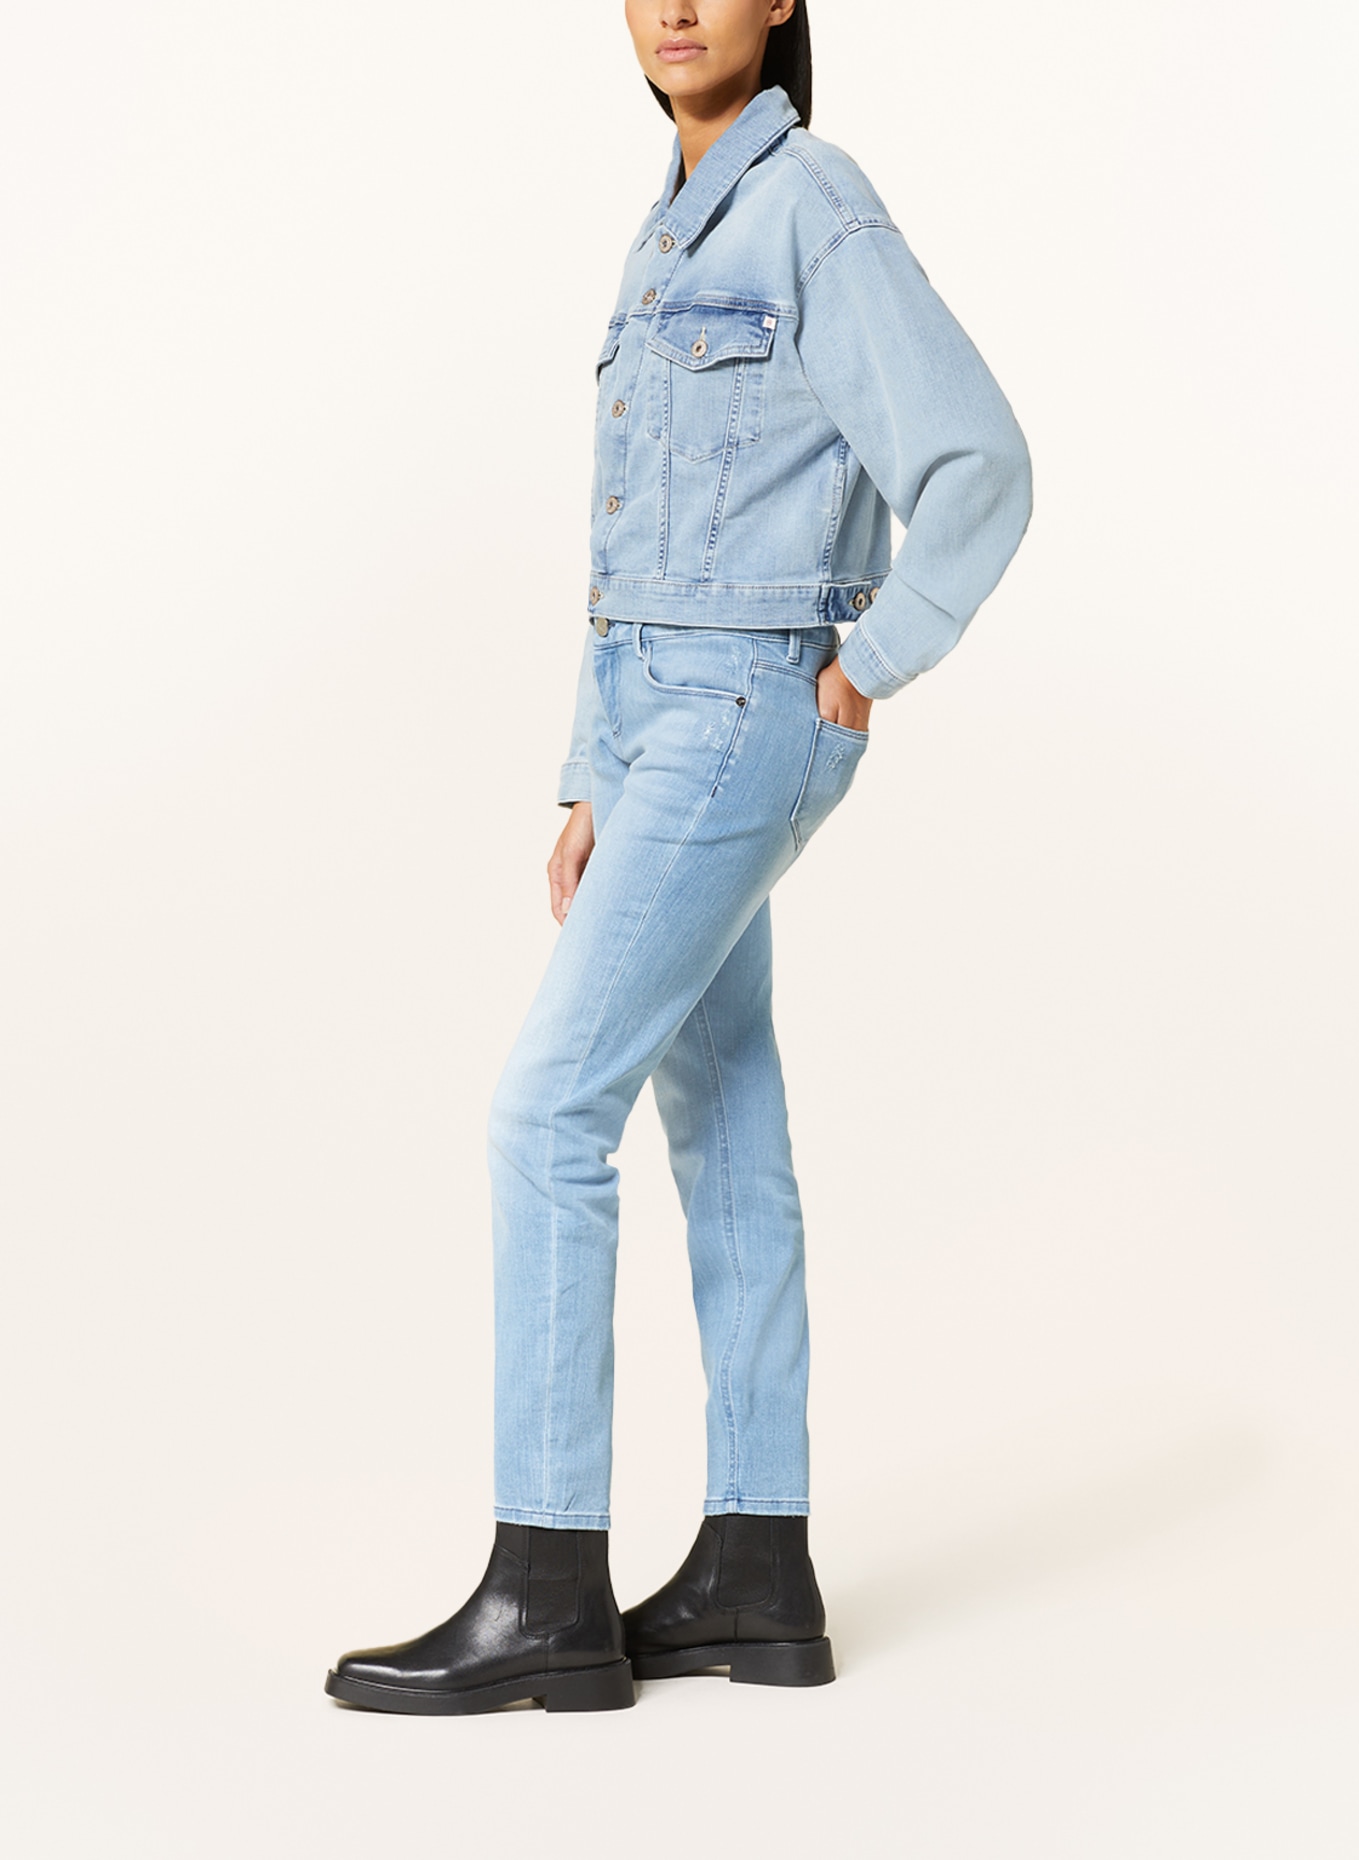 GOLDGARN DENIM Skinny jeans JUNGBUSCH, Color: 1070 light blue (Image 4)